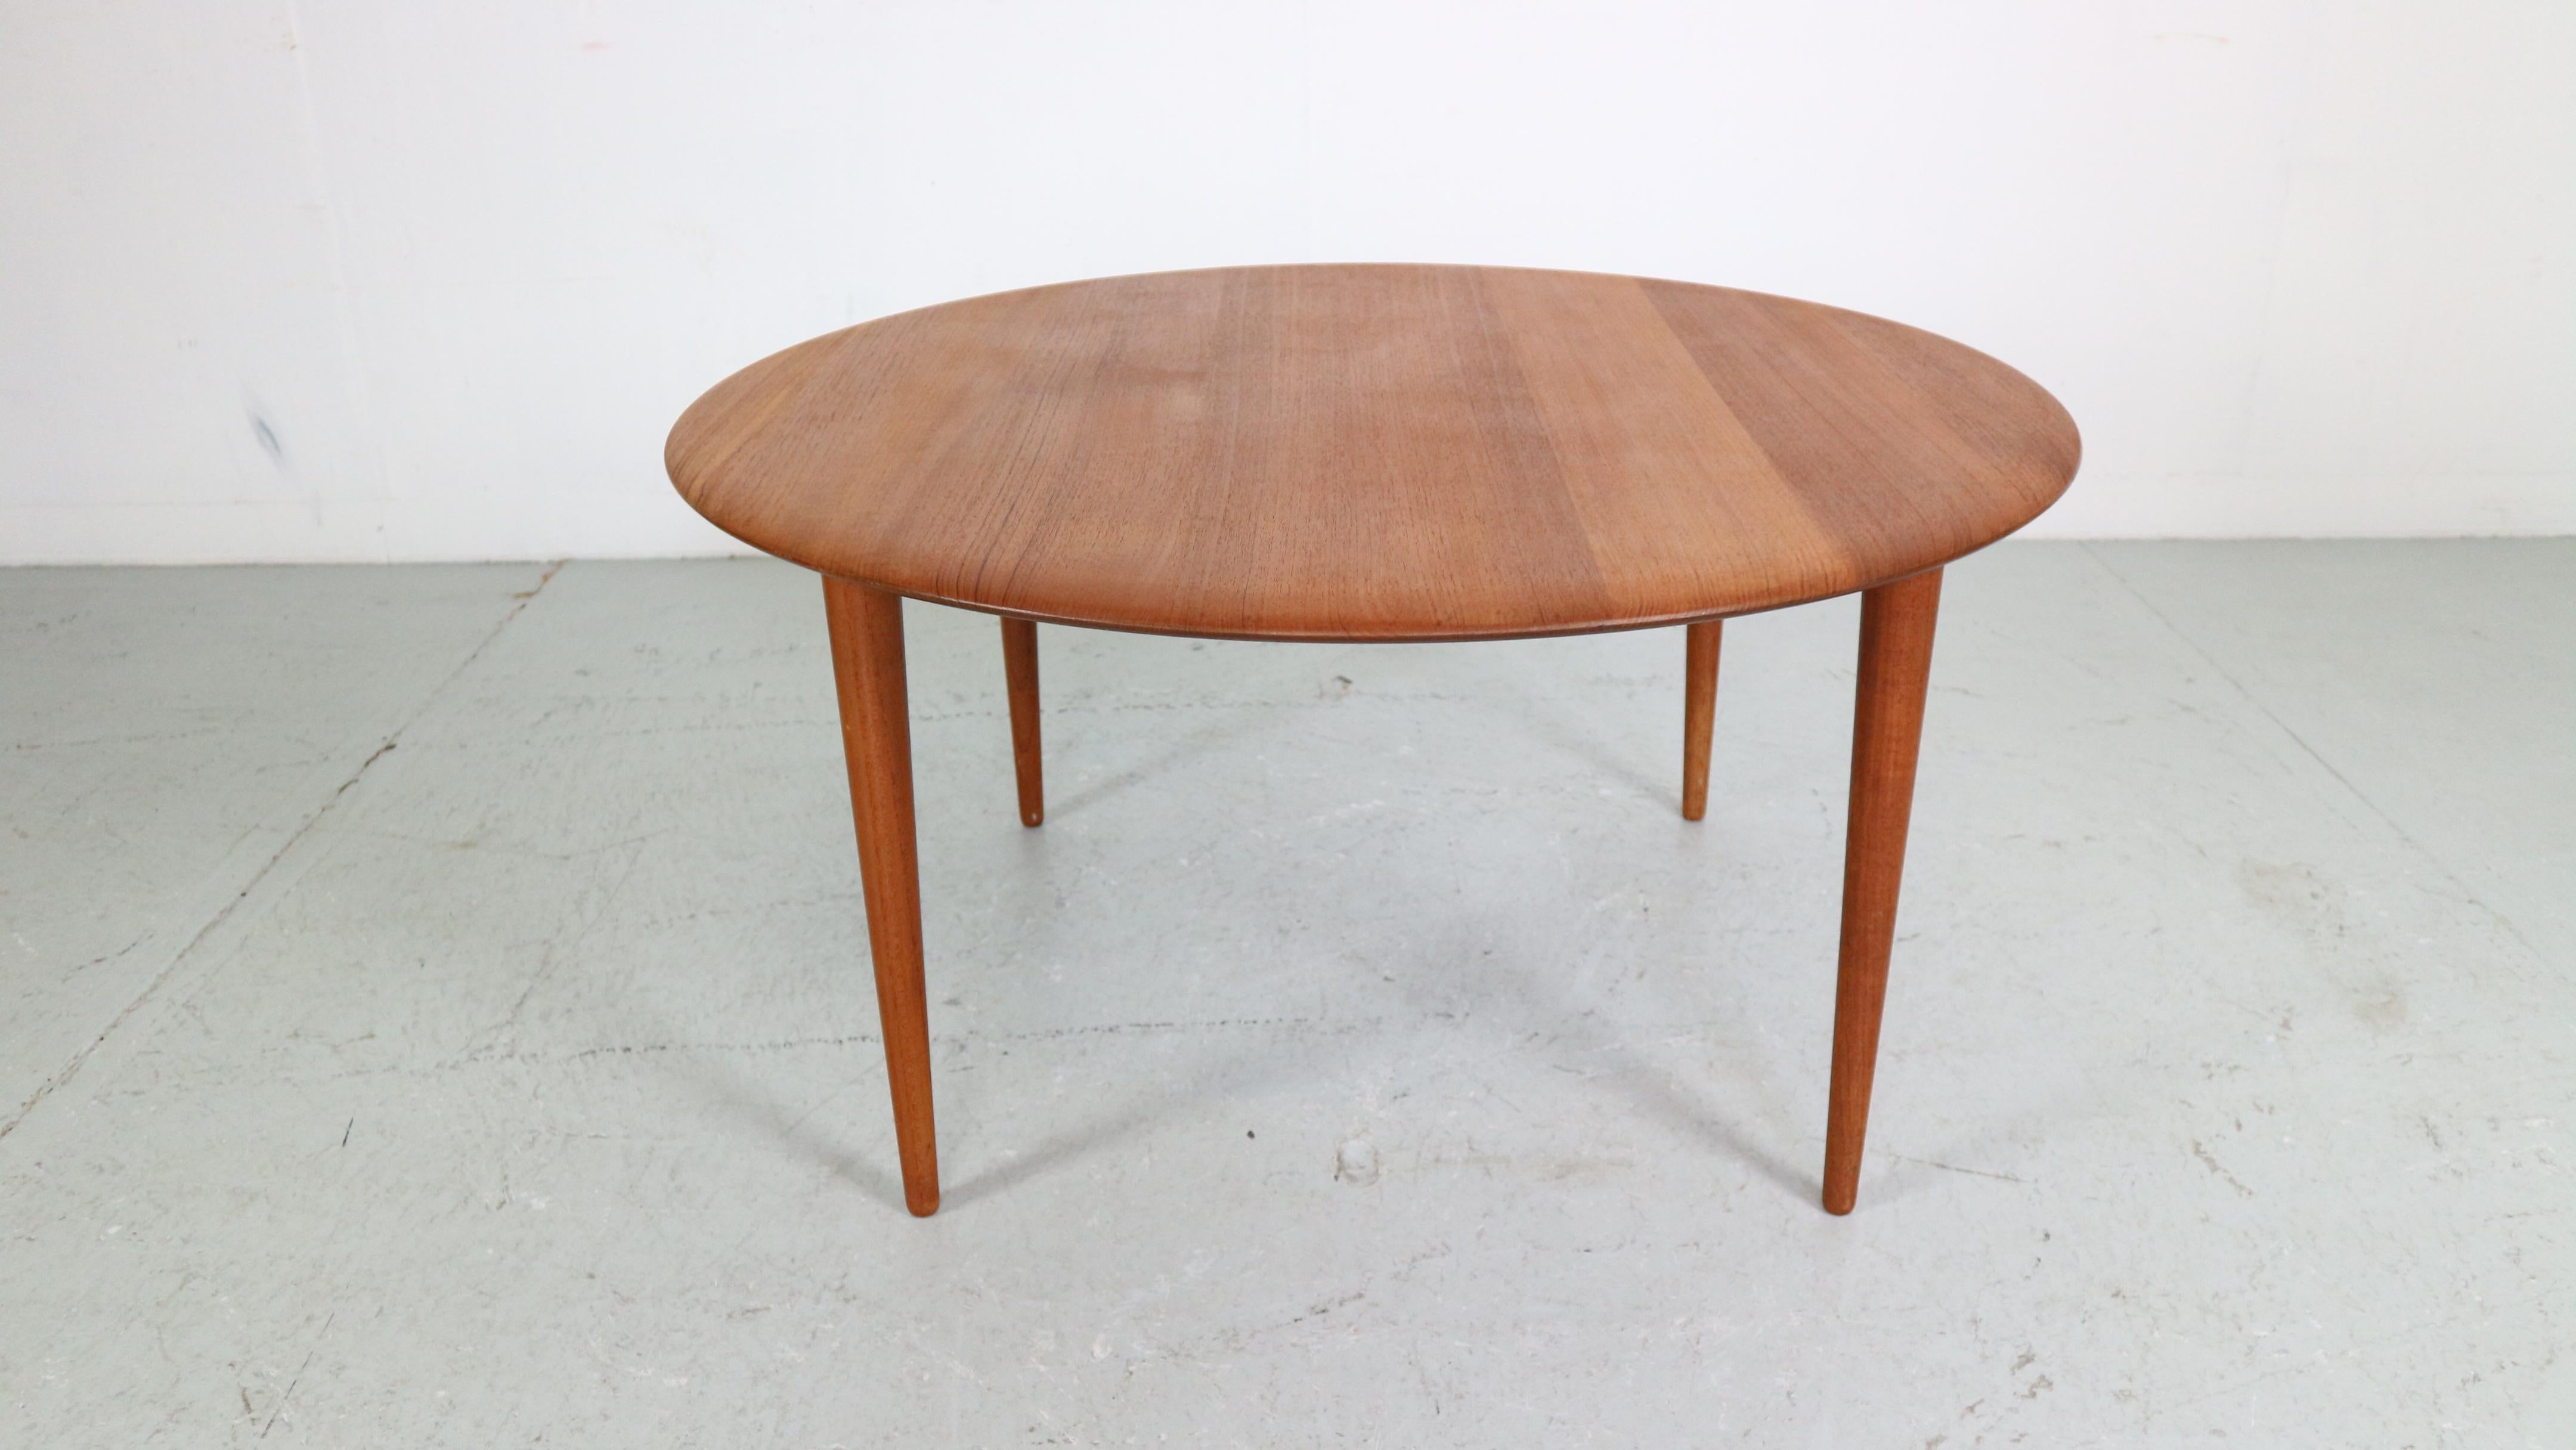 Cette table basse ronde a été conçue par Peter Hvidt & Orla Mølgaard-Nielsen et a été produite par France & Søn dans les années 1950, au Danemark.
Cette table circulaire est fabriquée en bois de teck massif et présente un design d'une simplicité